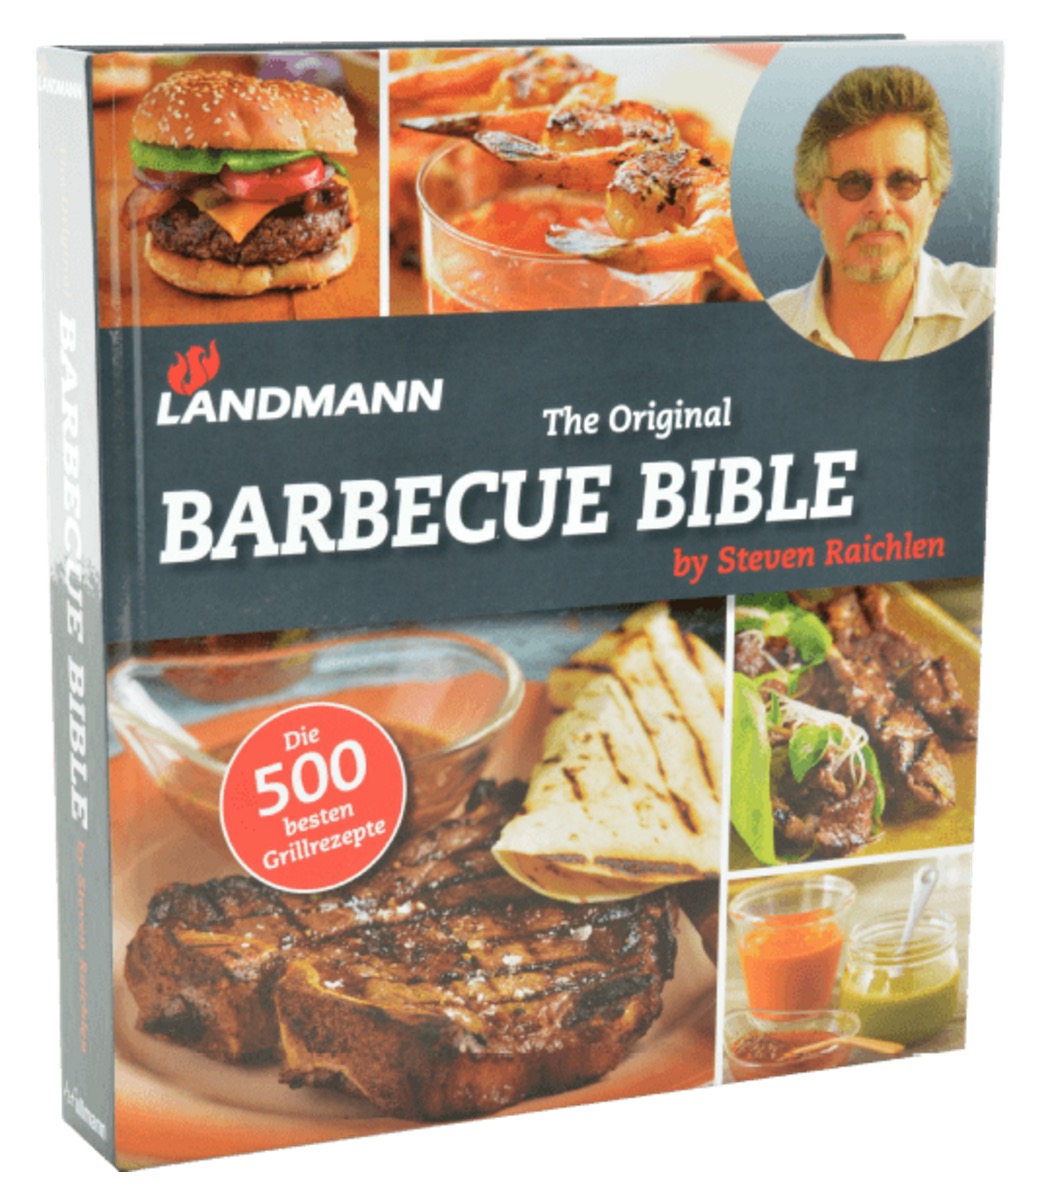 Kreativer am Grill! Die LANDMANN Barbecue Bible für nur 9,- Euro inkl. Versand